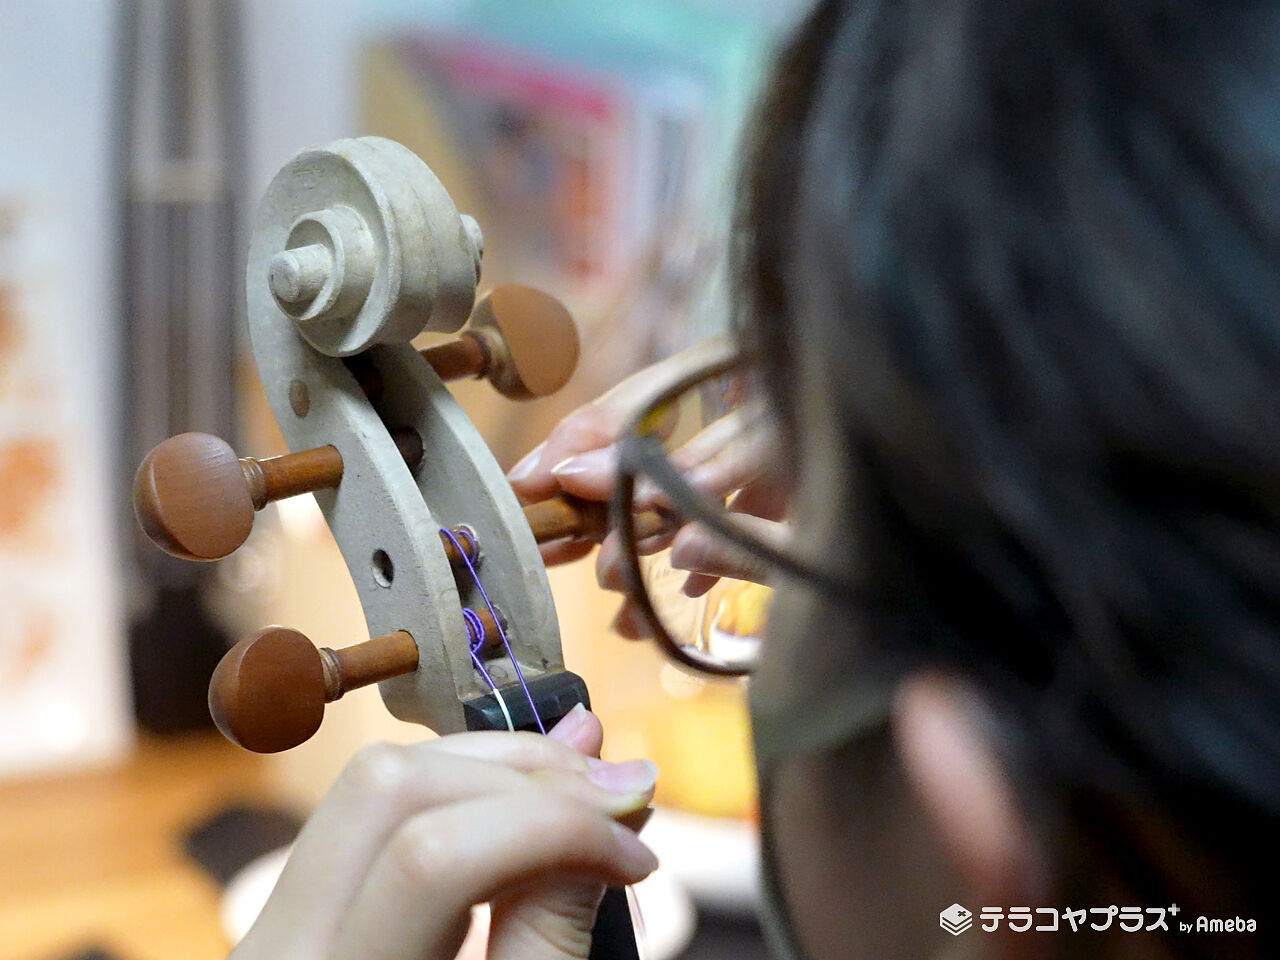 バイオリンを製作中の生徒